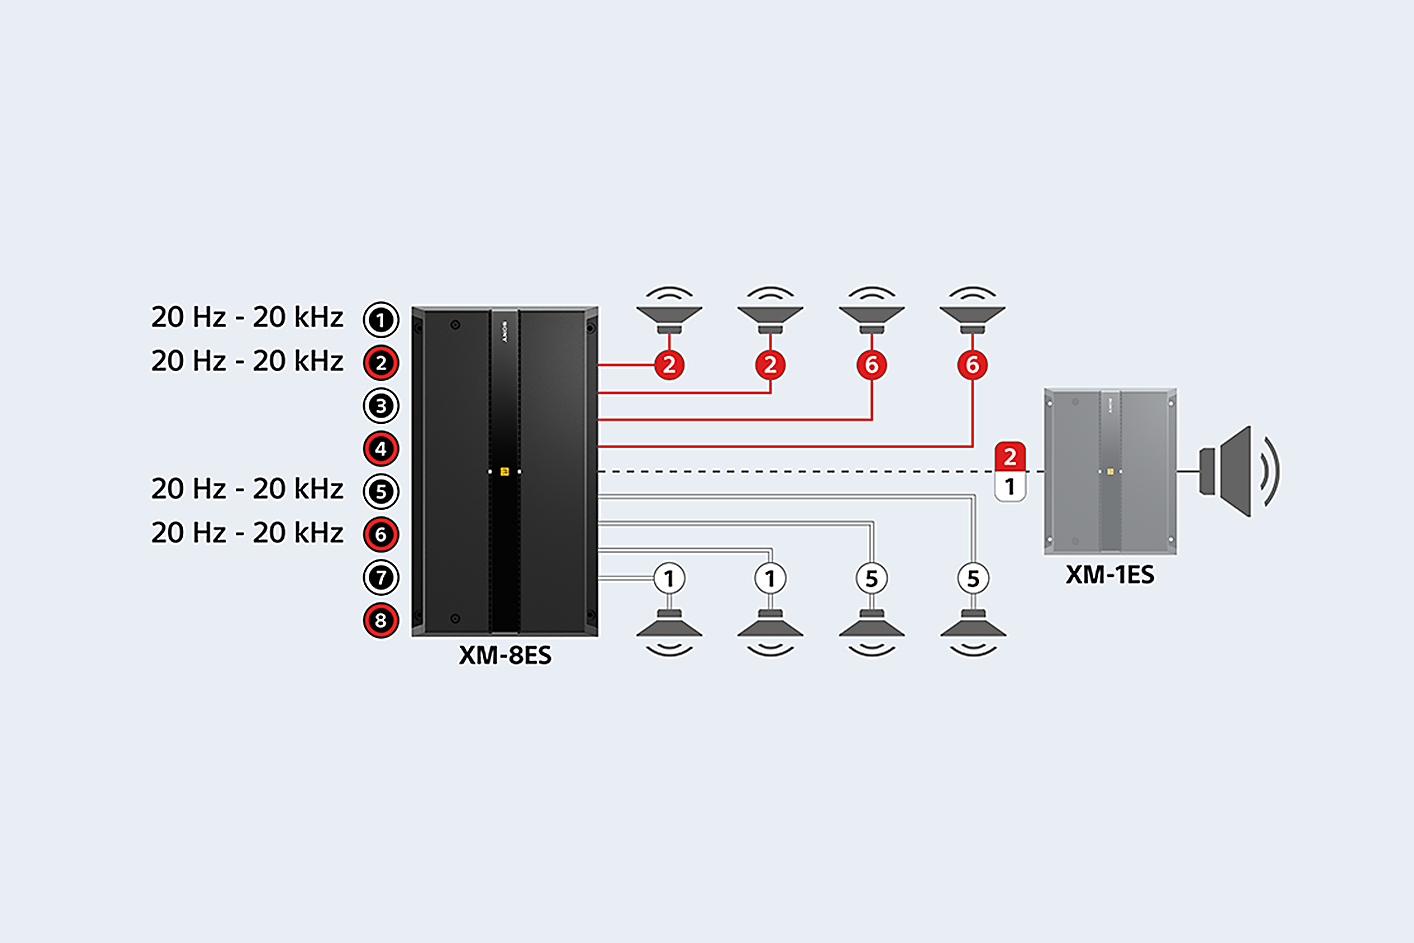 Prie aštuonių garsiakalbių ir XM-1ES prijungto XM-8ES schema, garso nustatymai rodomi prie 1, 2, 5 ir 6 prievadų